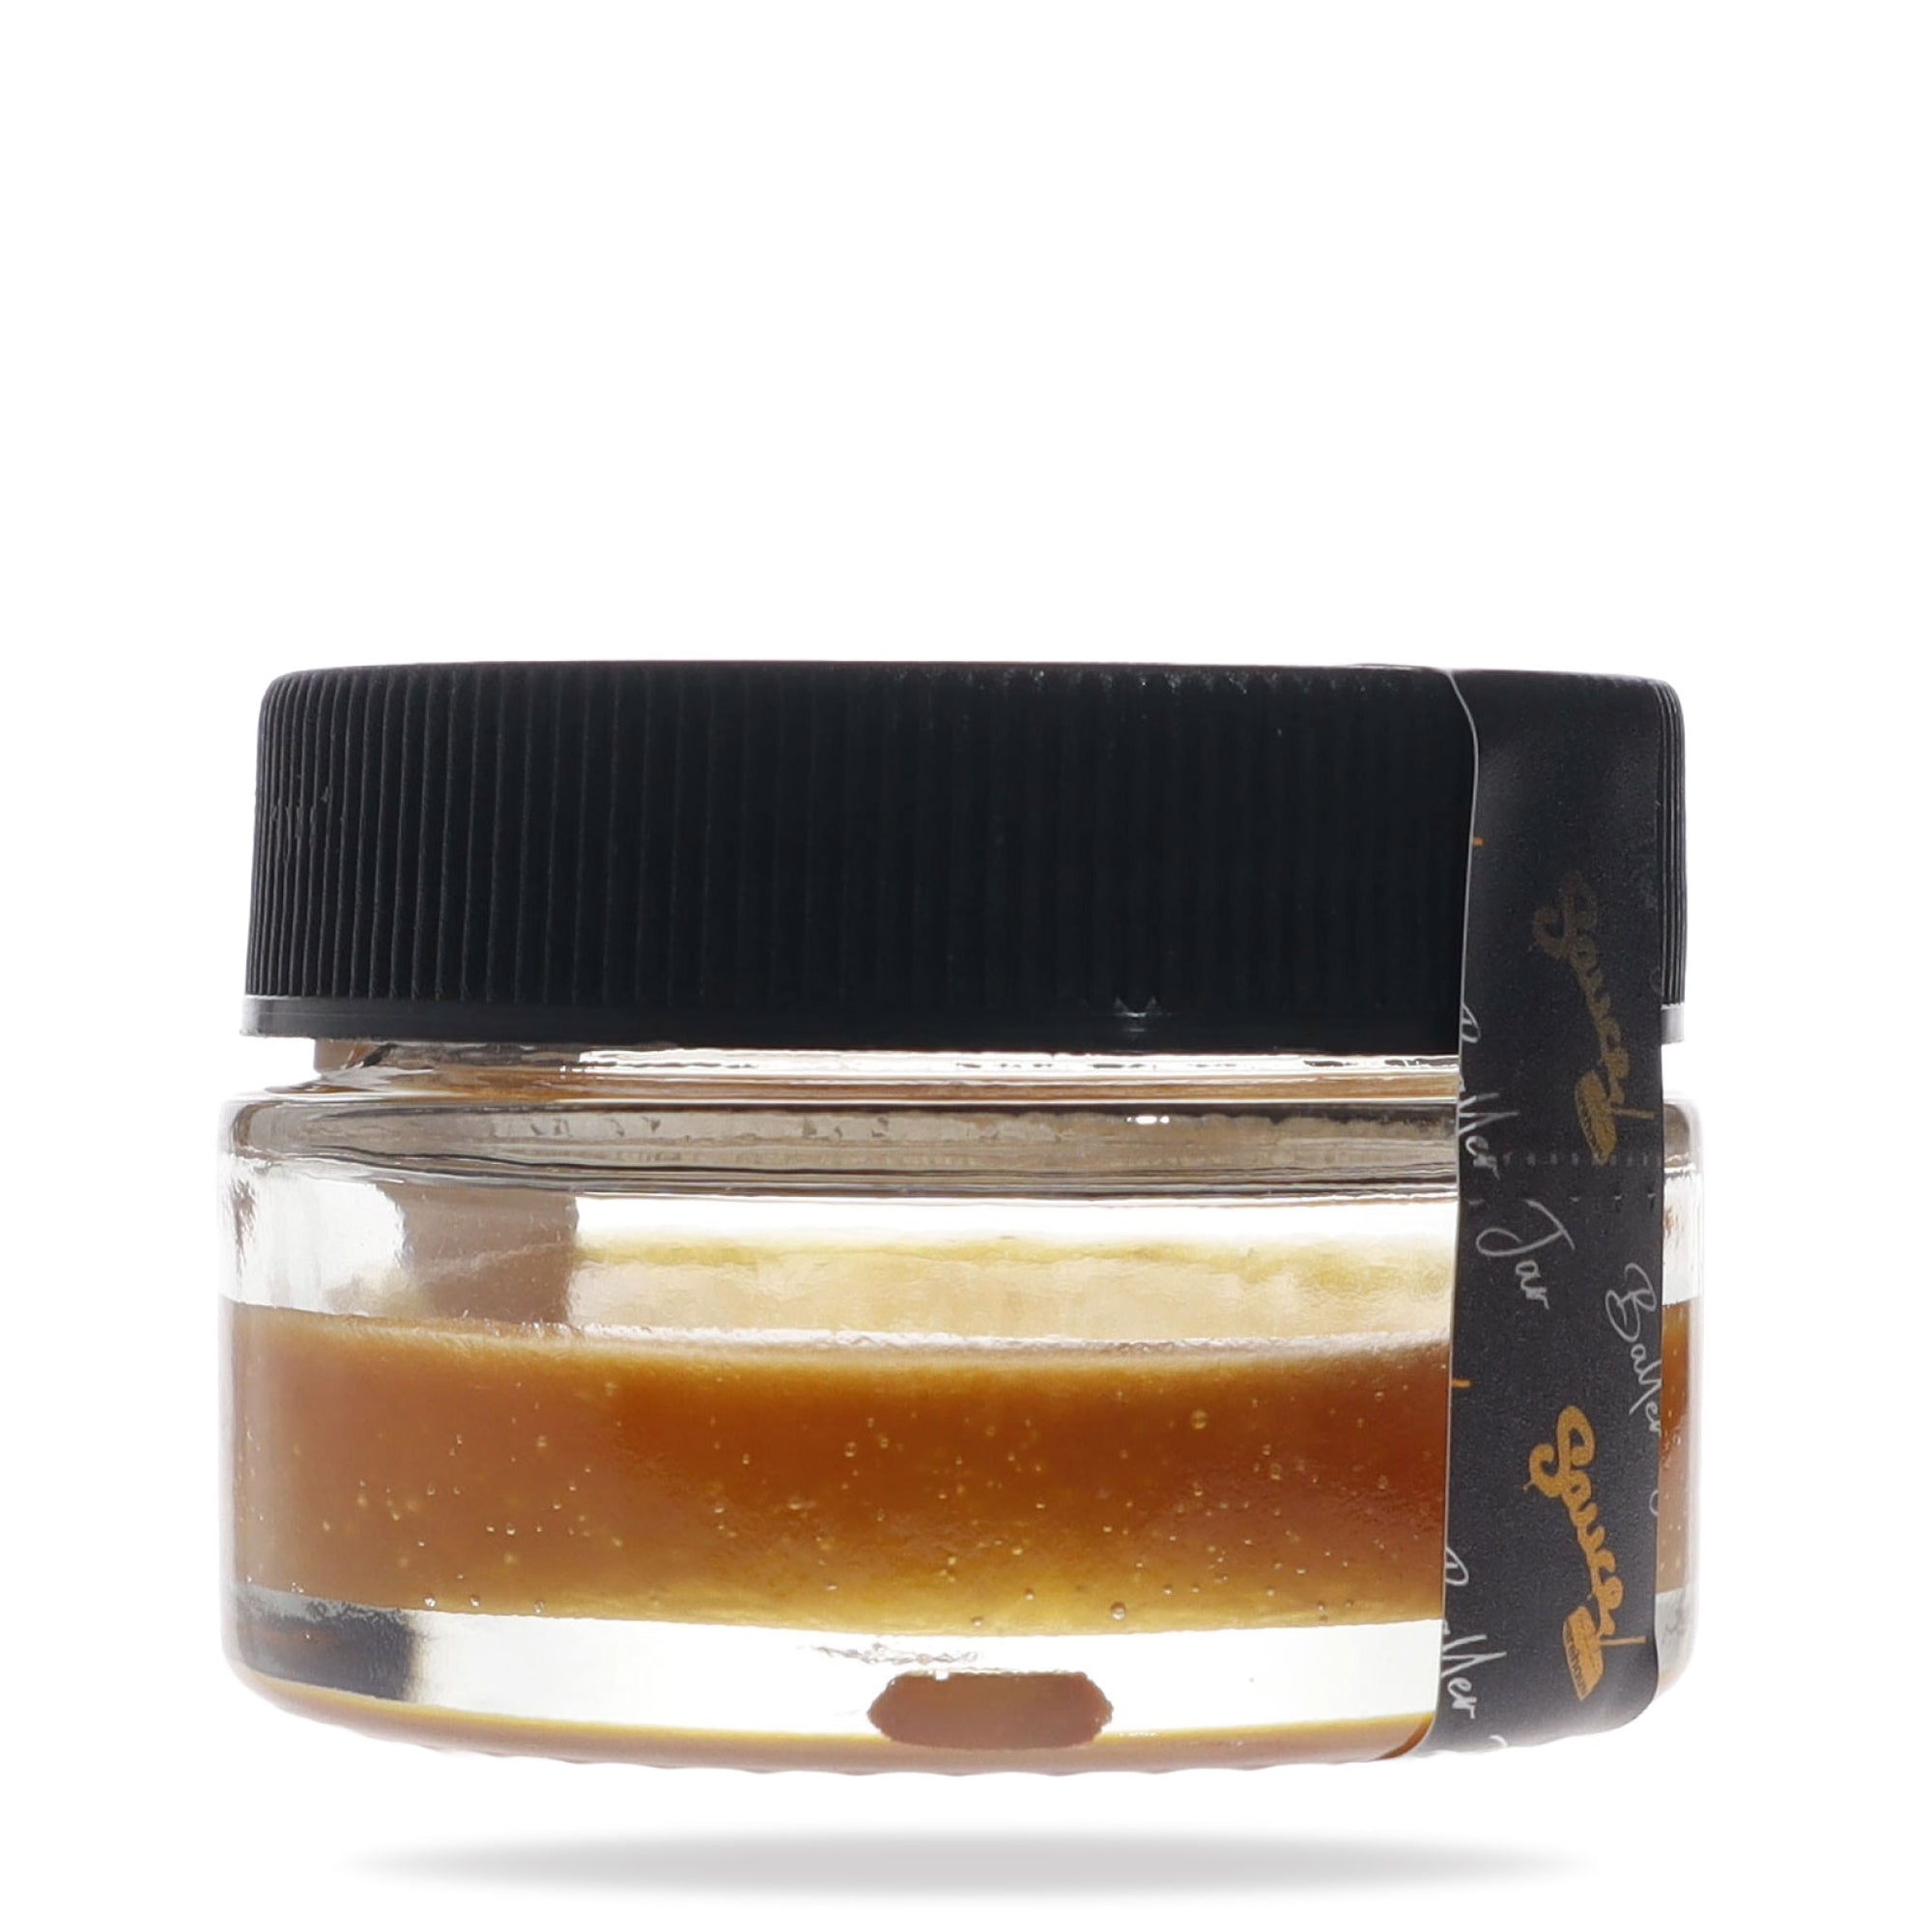 Image of Full Spectrum CBD Distillate 7 gram baller jar.